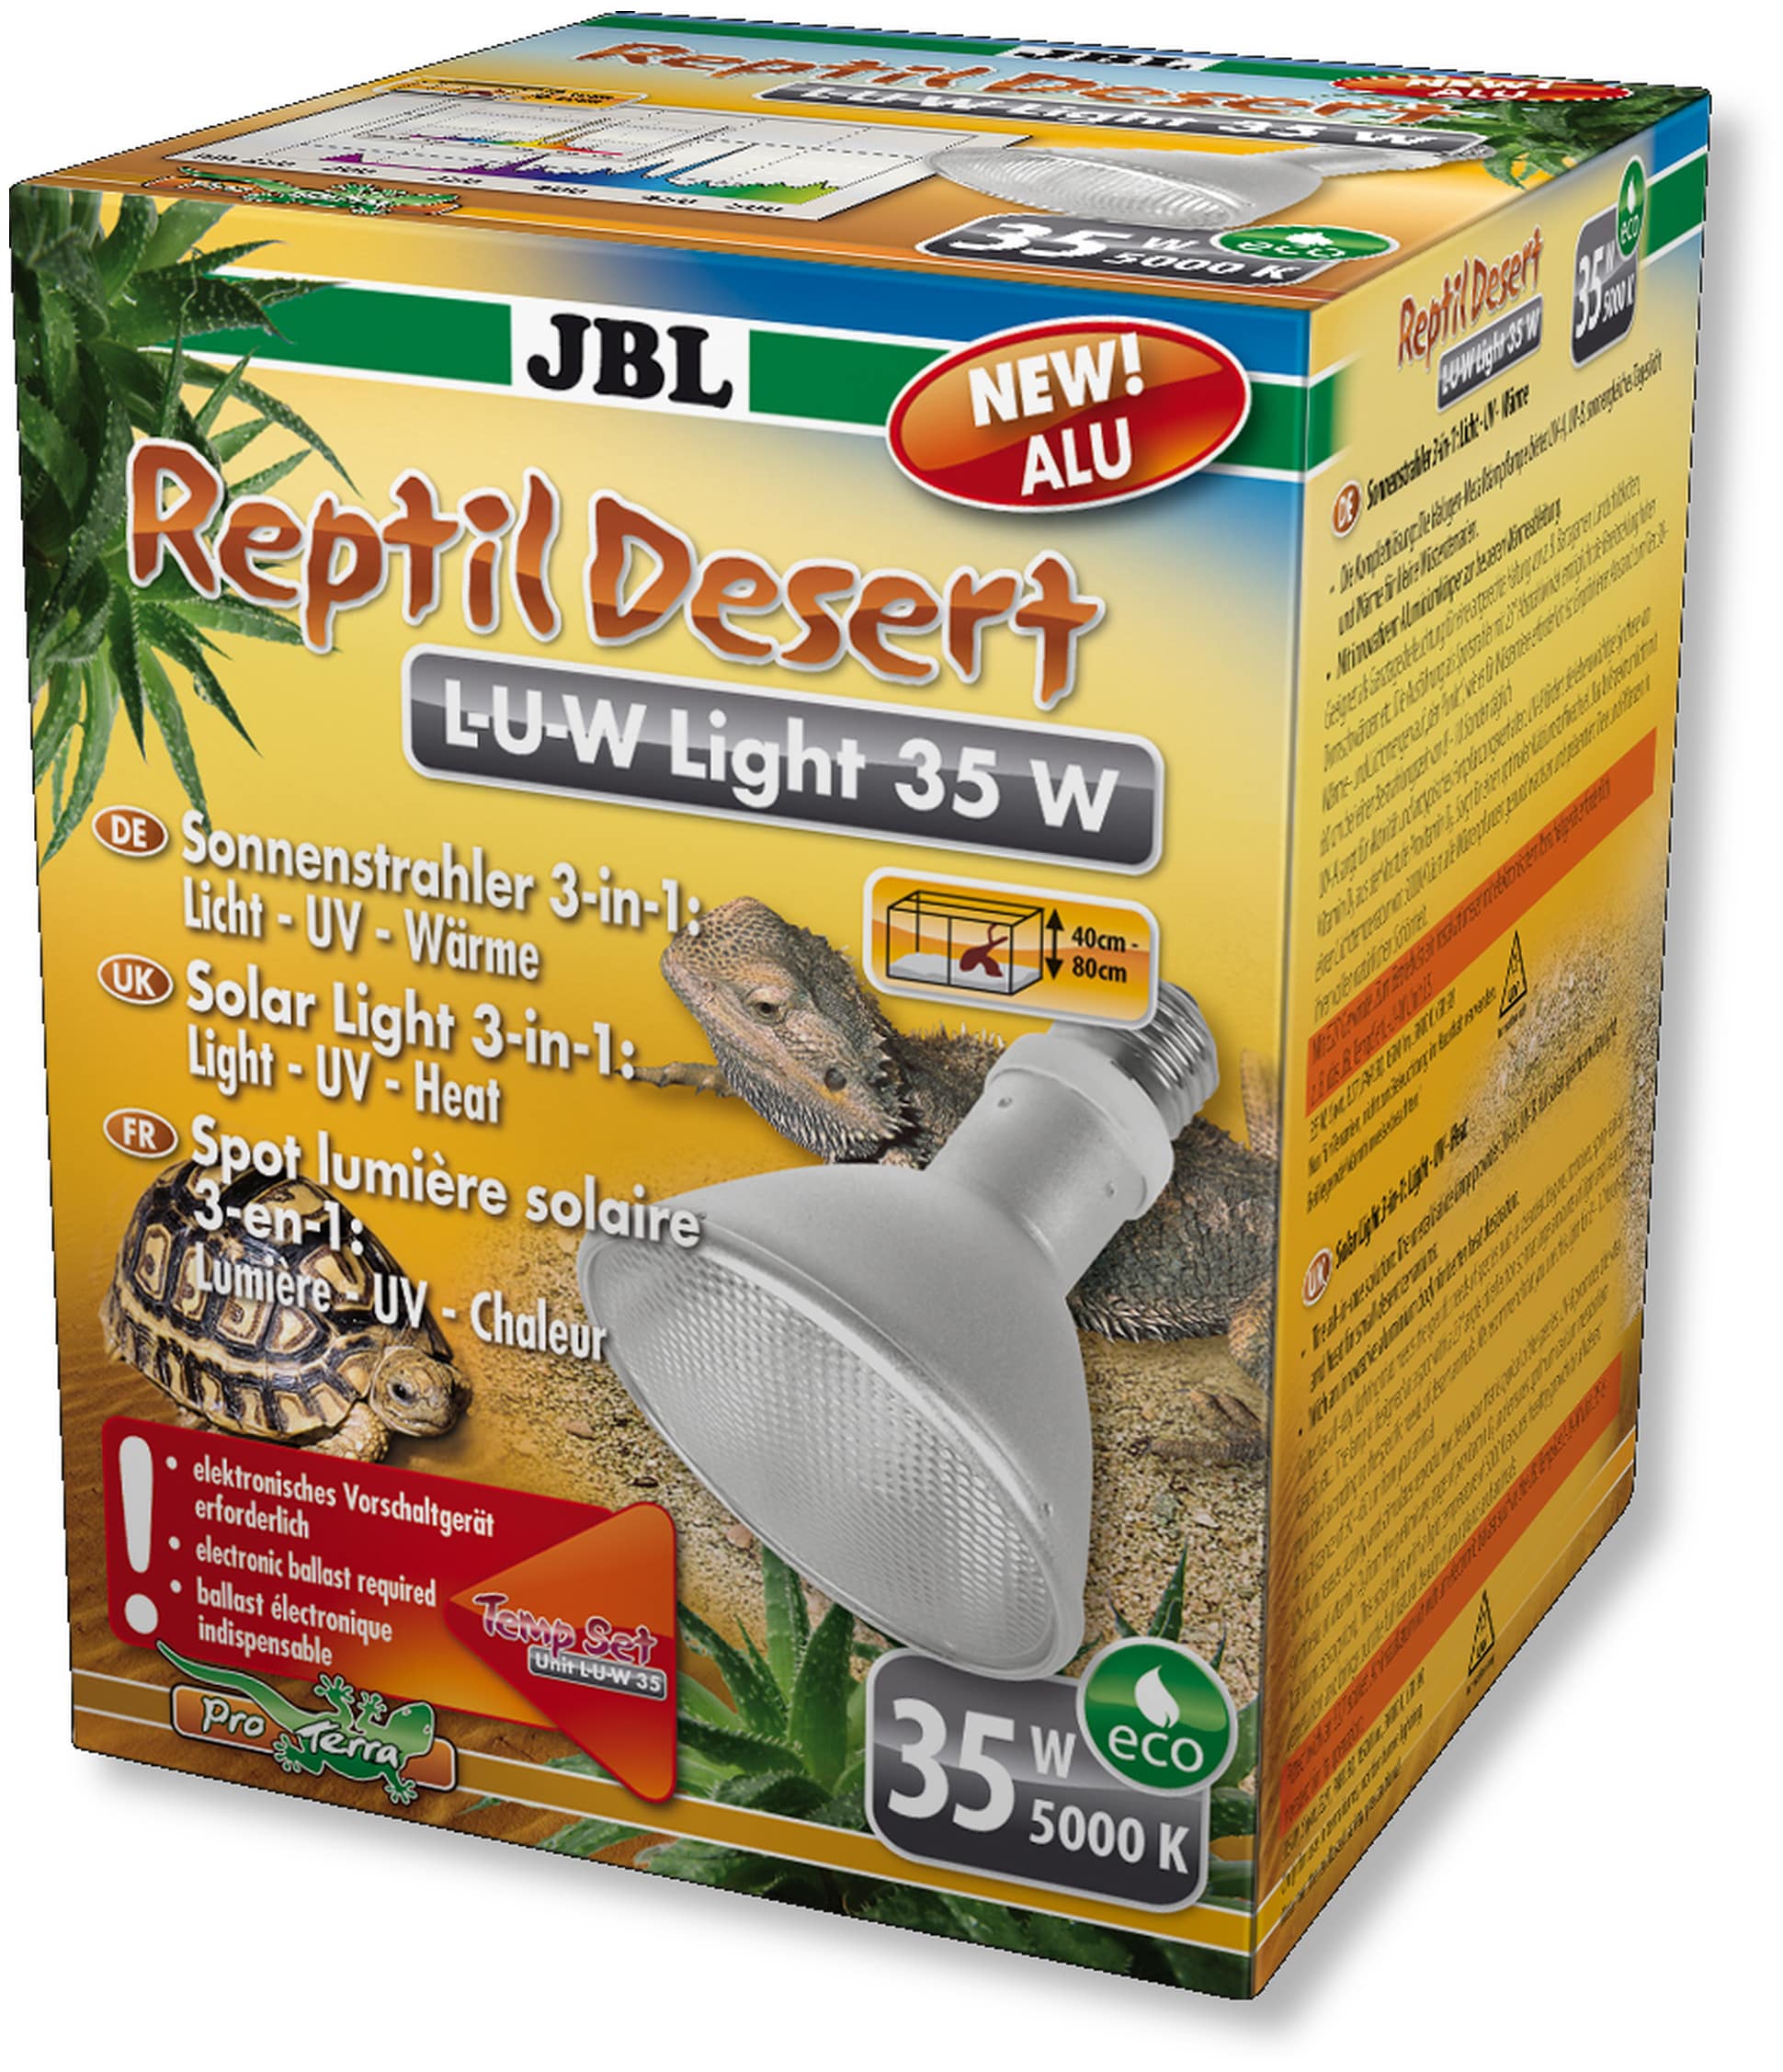 JBL ReptilDesert L-U-W Light alu 35W spot HQI en aluminium pour la reproduction du soleil en terrarium de type désertique